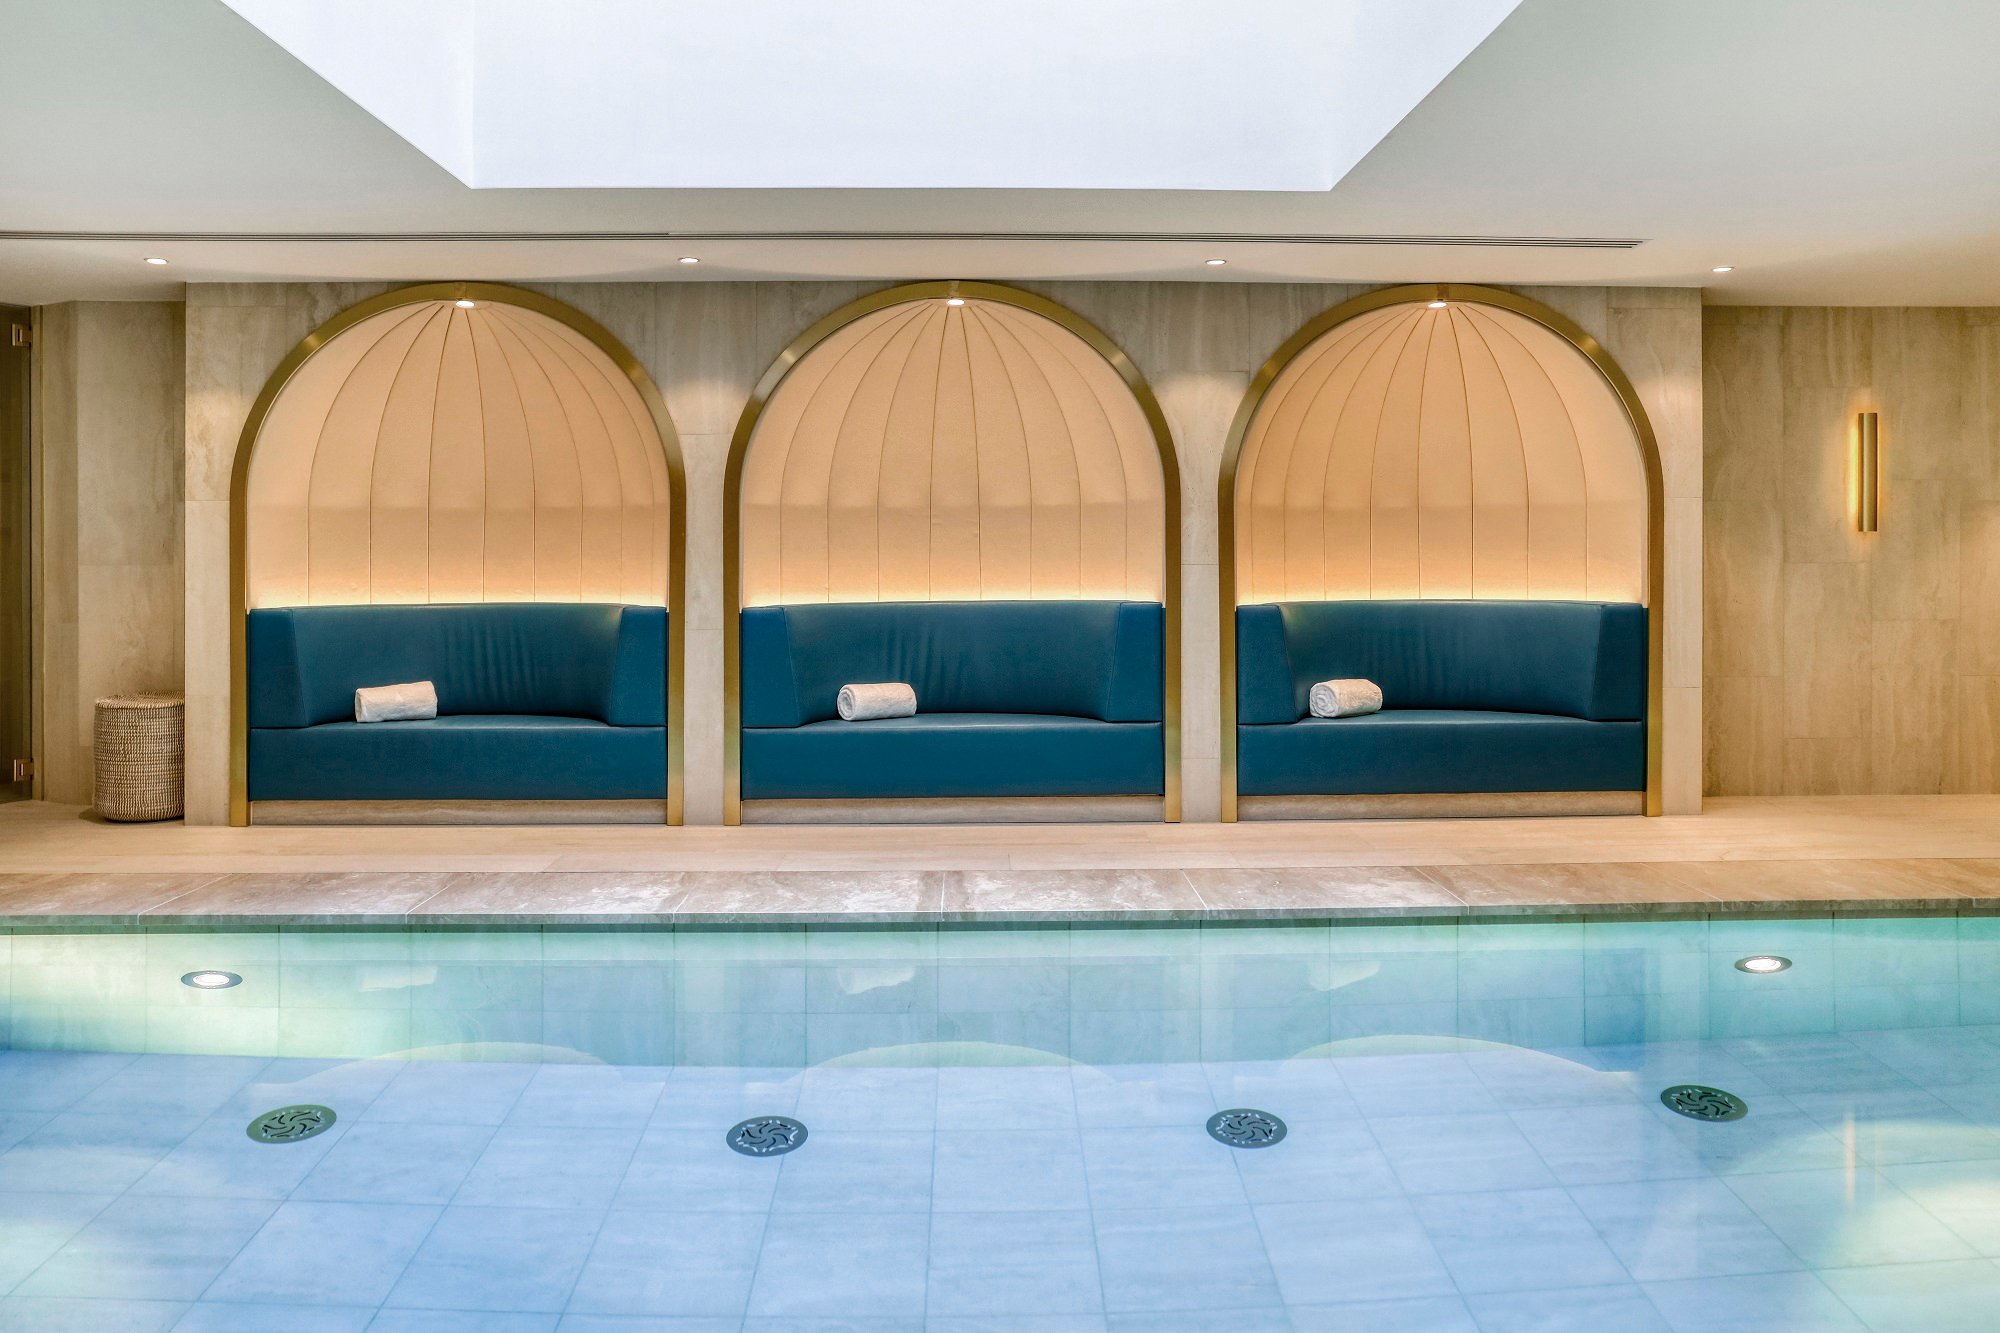 Maison Albar Hotels Le Vendome | Hotel piscine Paris